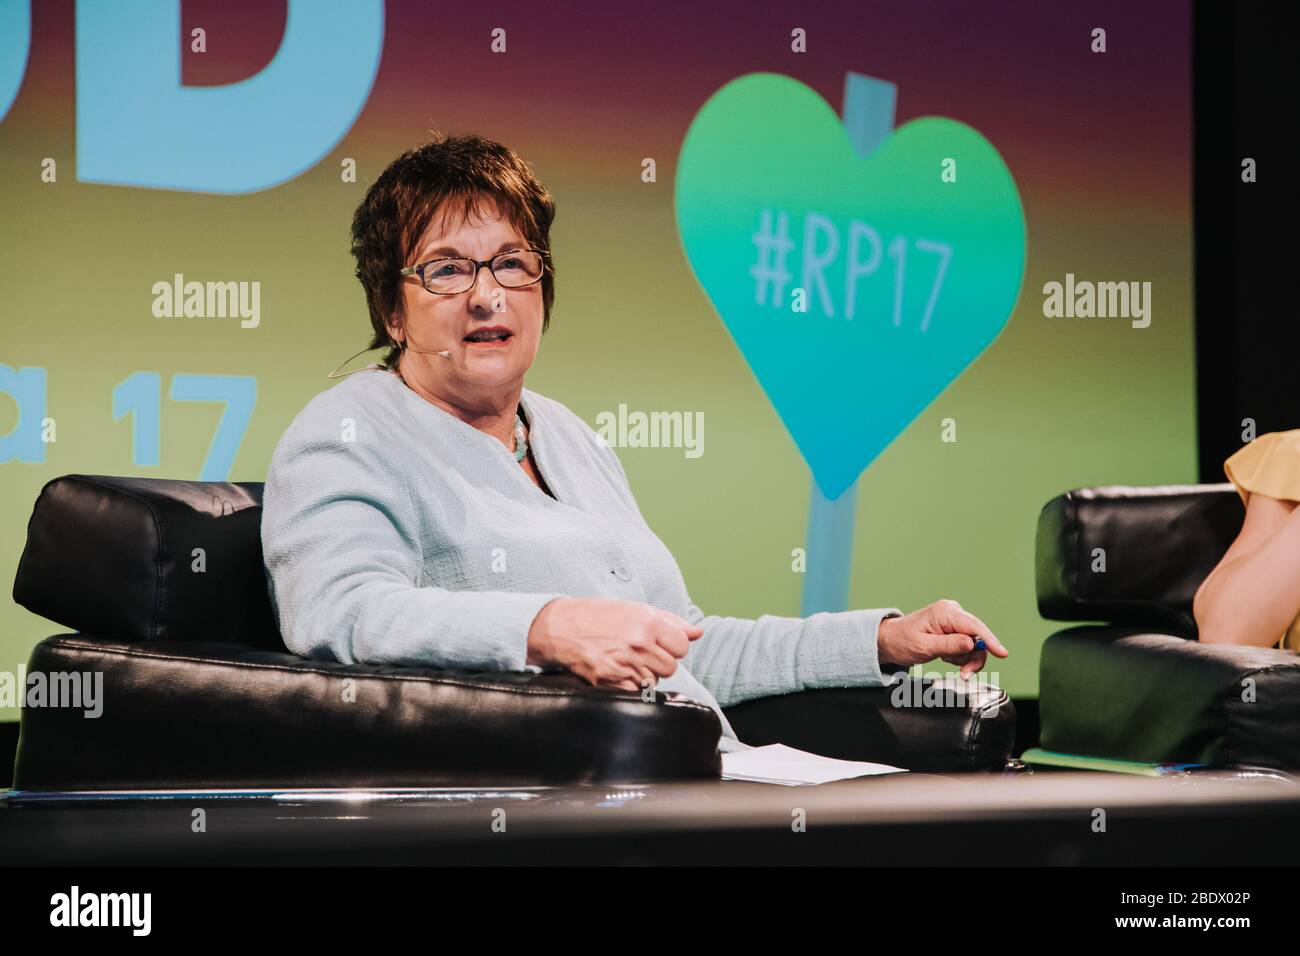 Politikerin Brigitte Zypries Referentin auf Webkonferenz republica, Berlin Deutschland 2017 Stockfoto